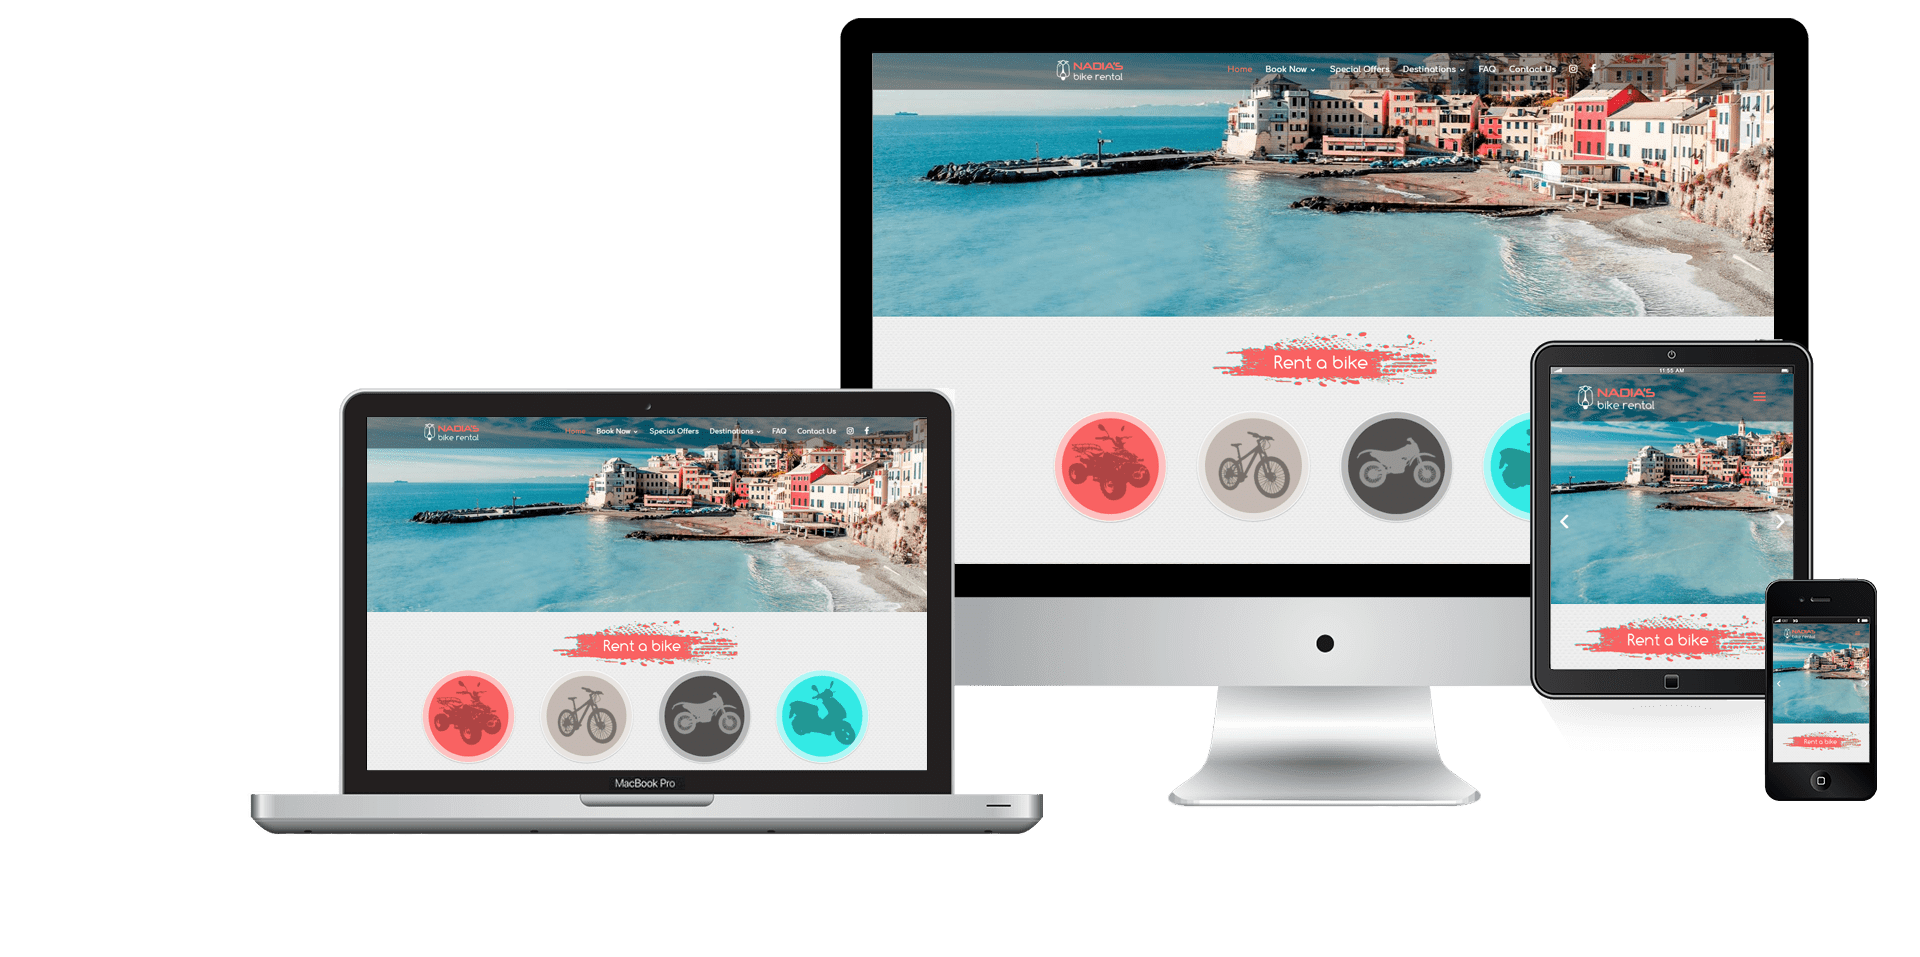 Naidas bike rentals website on desktop, laptop, tablet and mobile